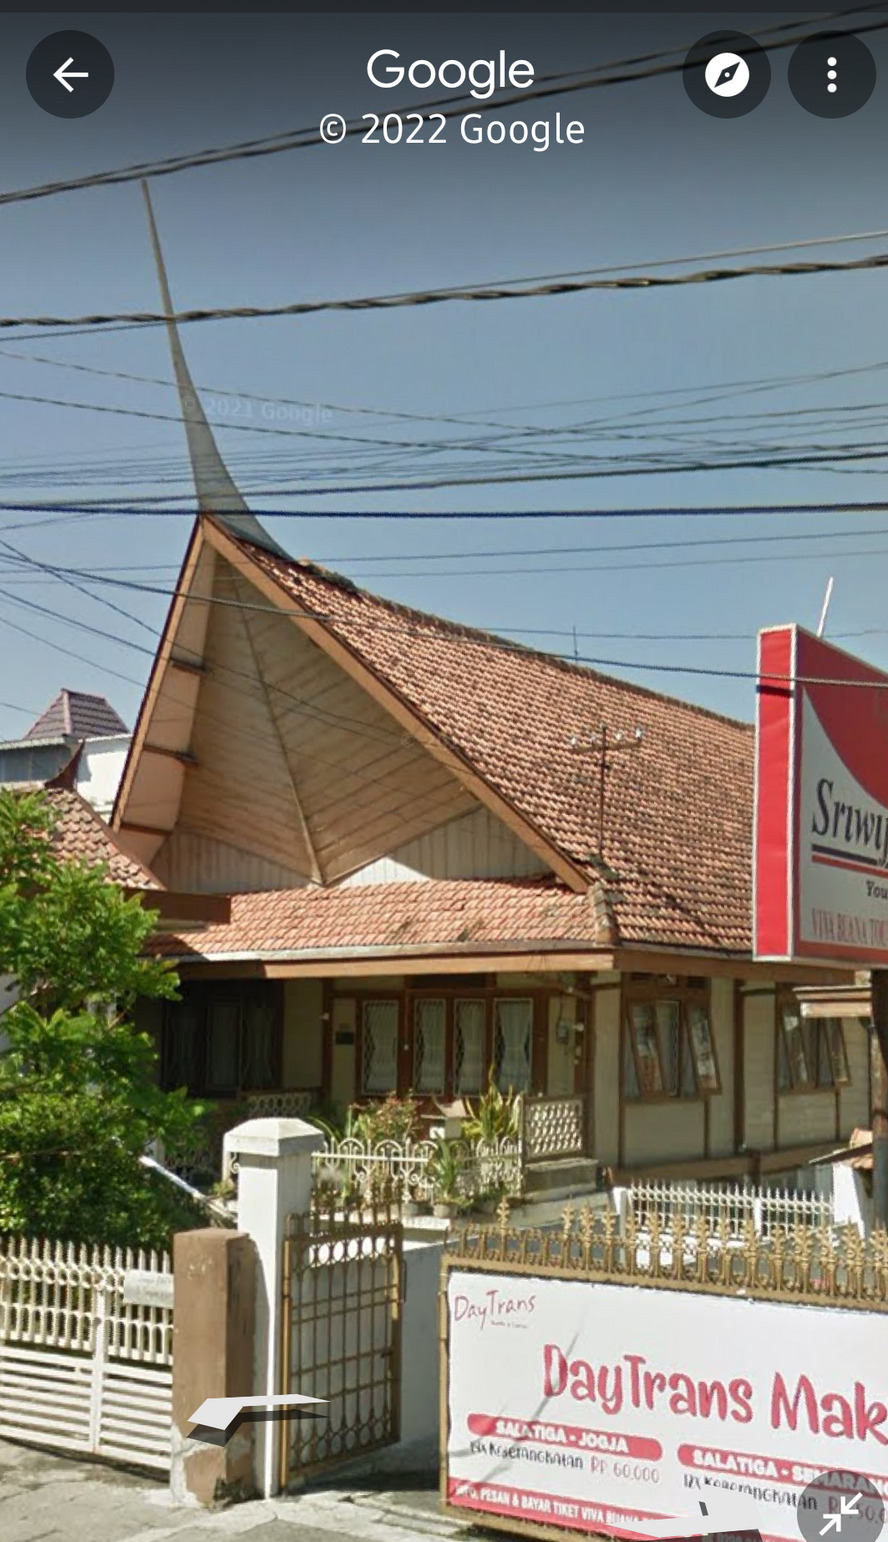 Rumah Minangkabau di Salatiga di Google Street View 